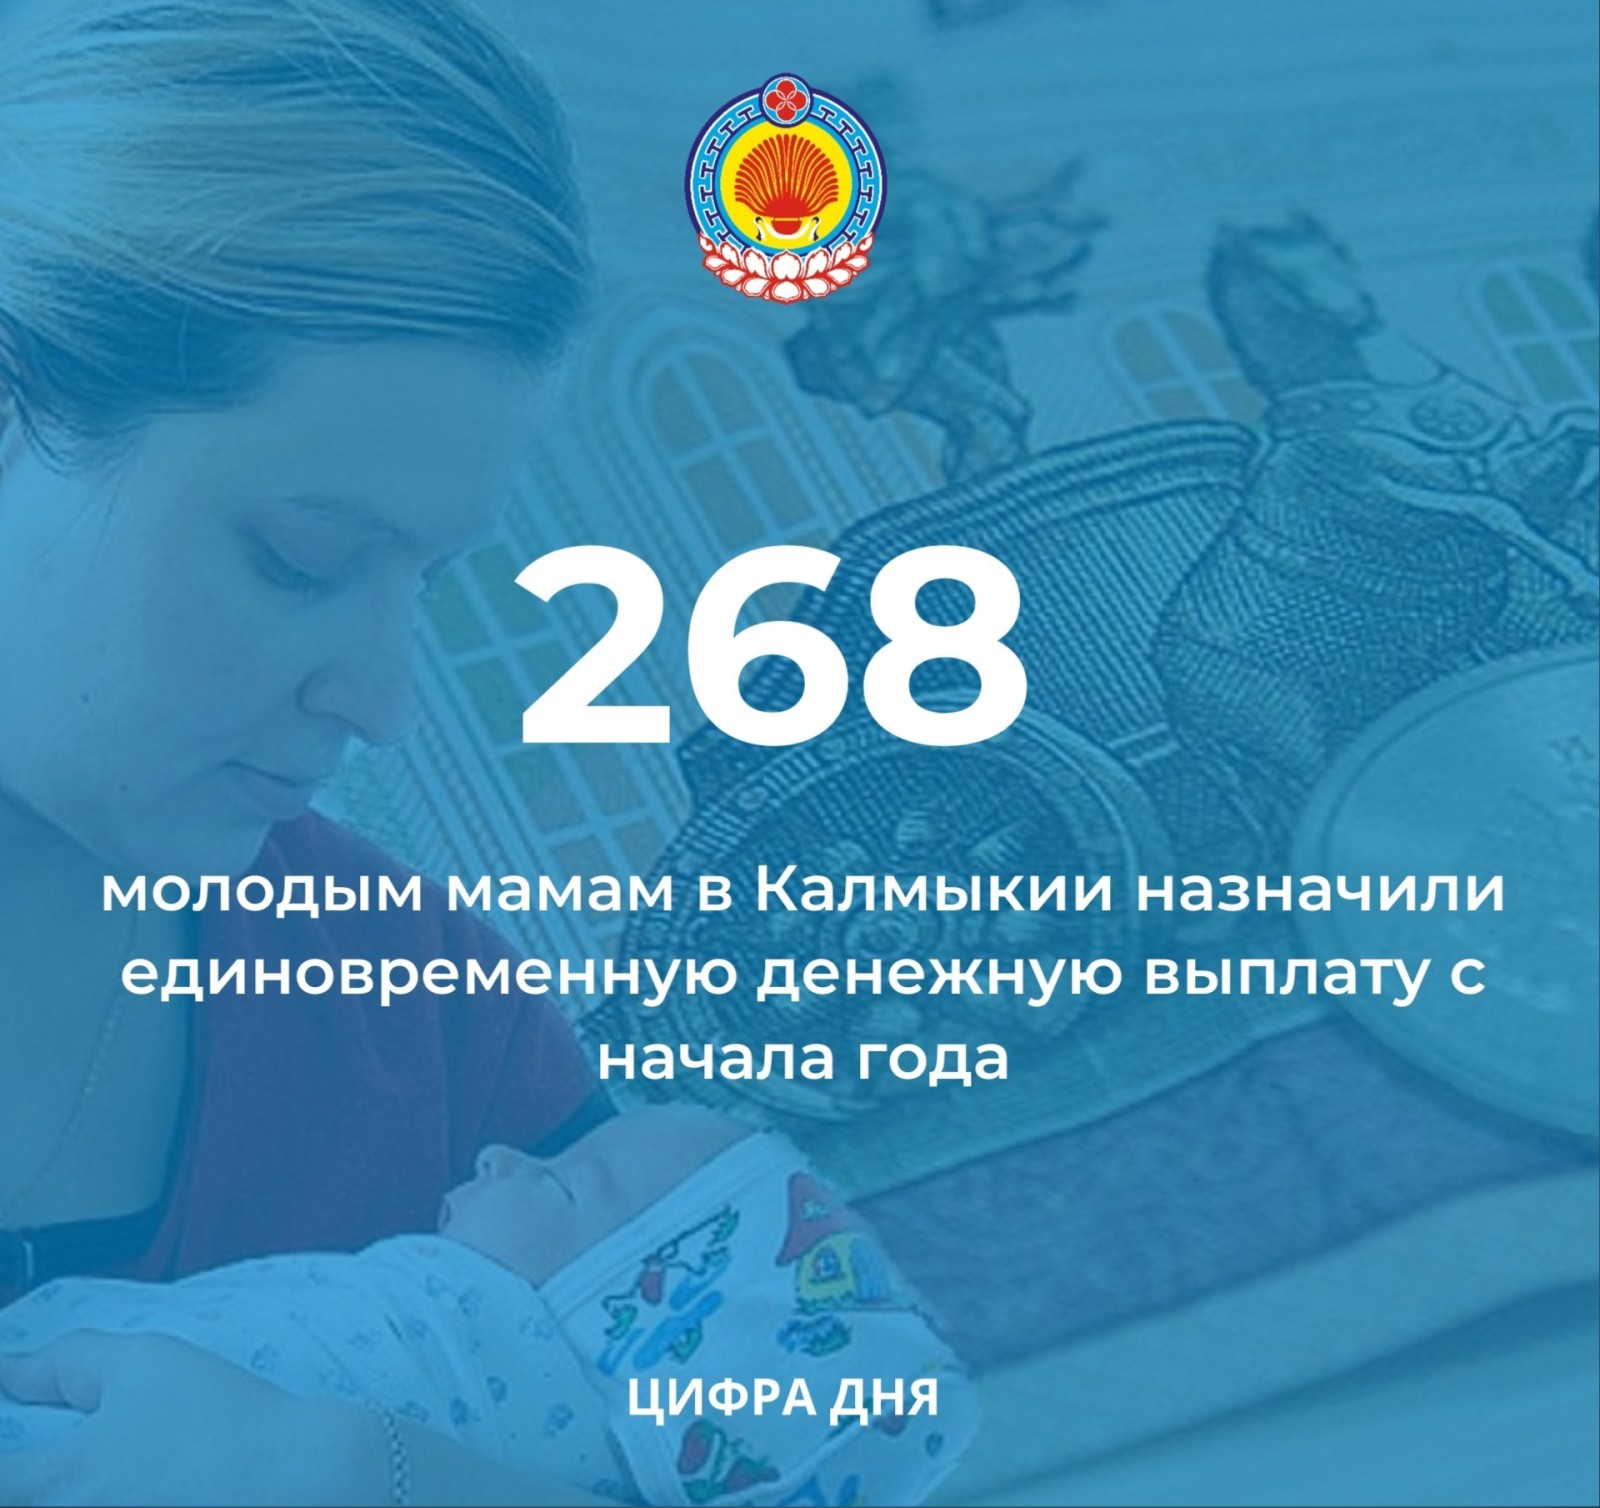 В Калмыкии с начала года более 200 - стам молодым мамам назначена единовременная денежная выплата в размере 30 тыс. рублей